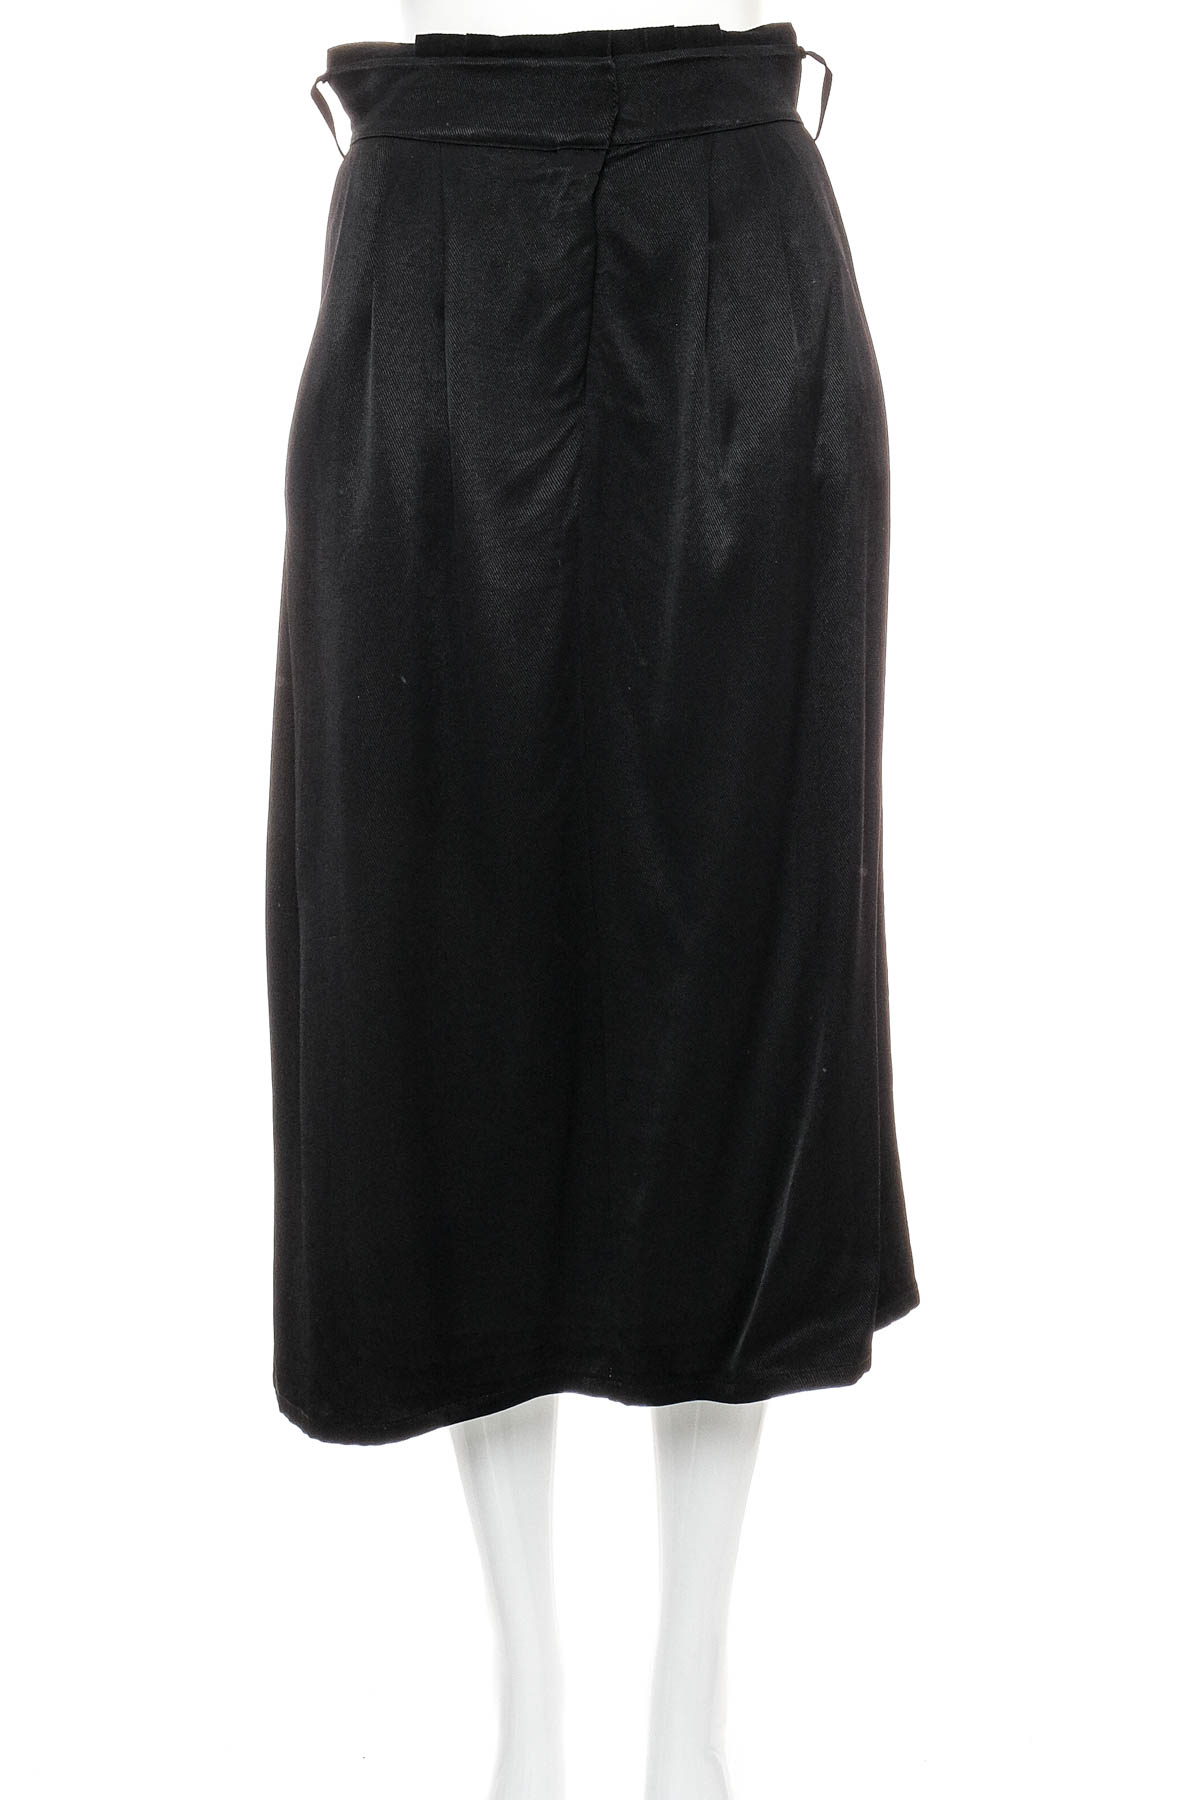 Skirt - ASTRID BLACK LABEL - 0